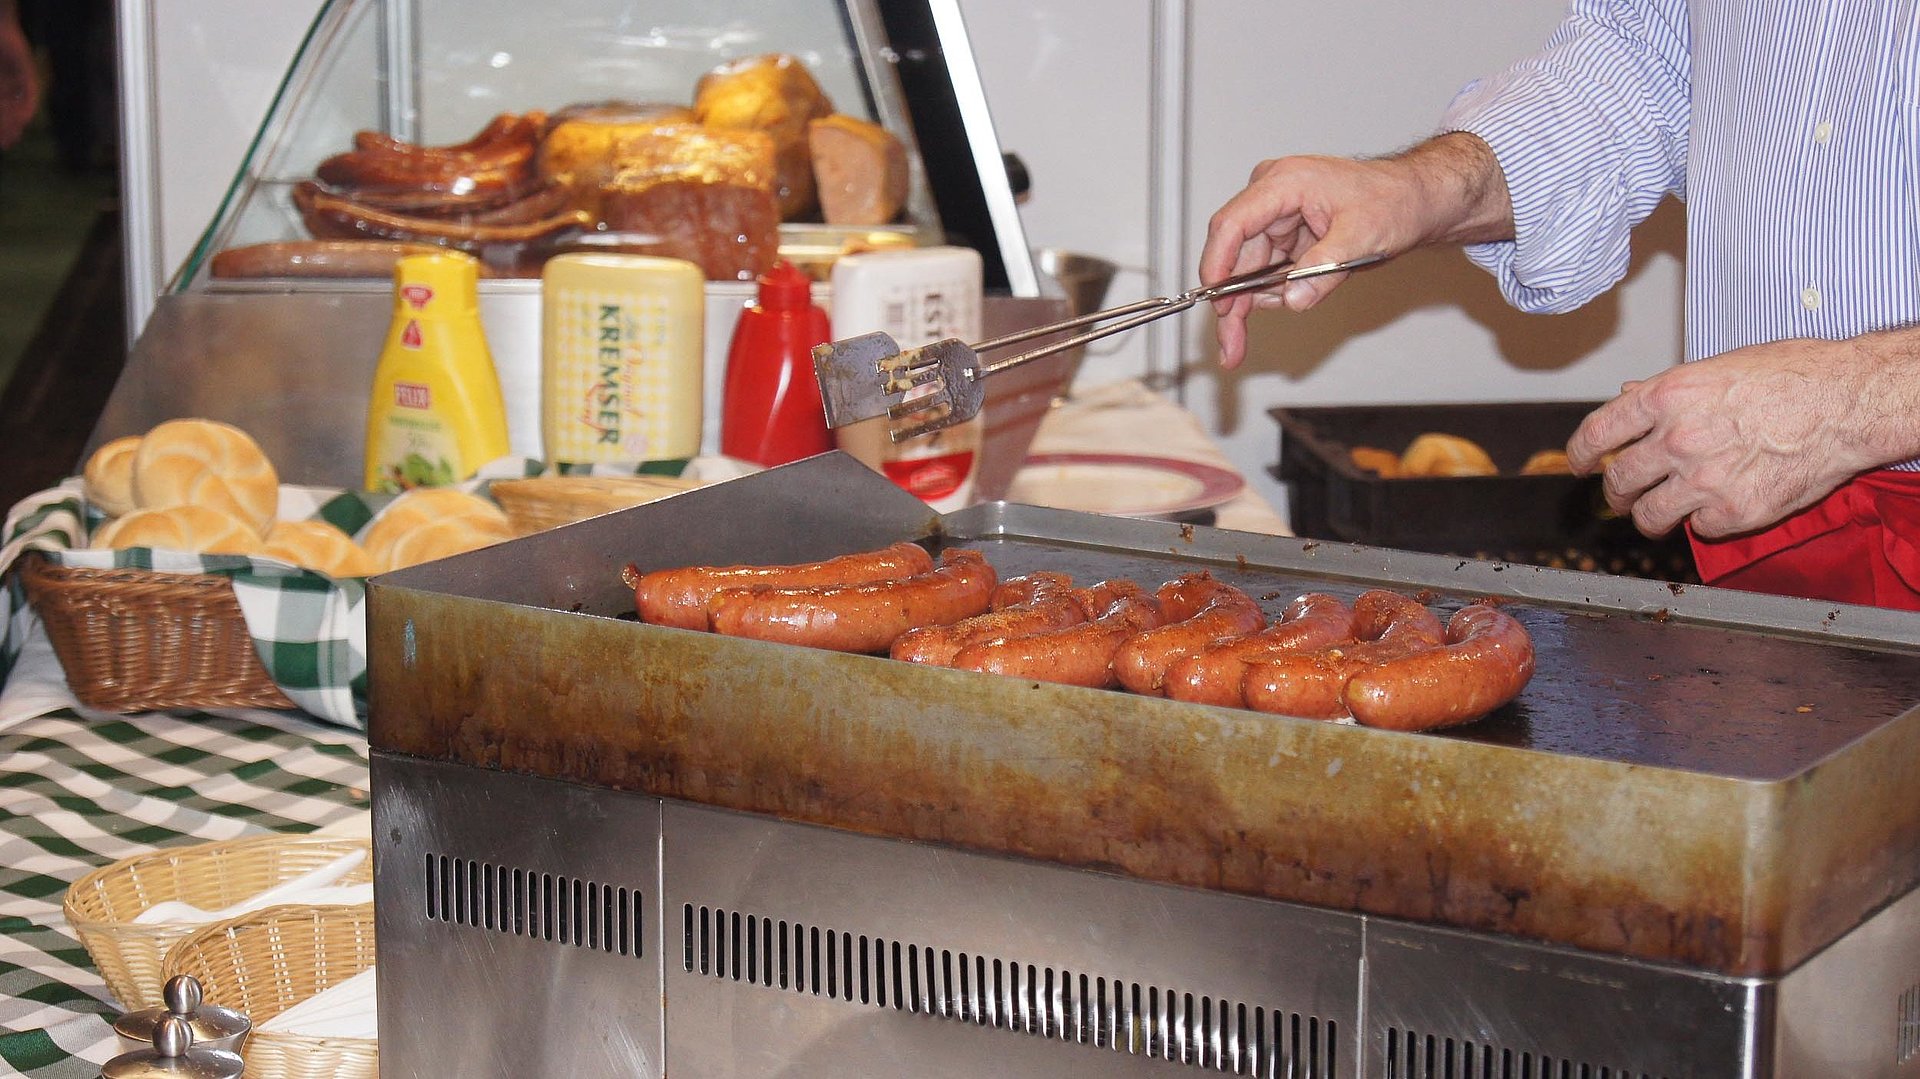 Gastronomie für Gruppen im Ostallgäu - Mann grillt soeben Würsten, im Hintergrund sind Brötchen und Soßen wie Ketchup und Senf